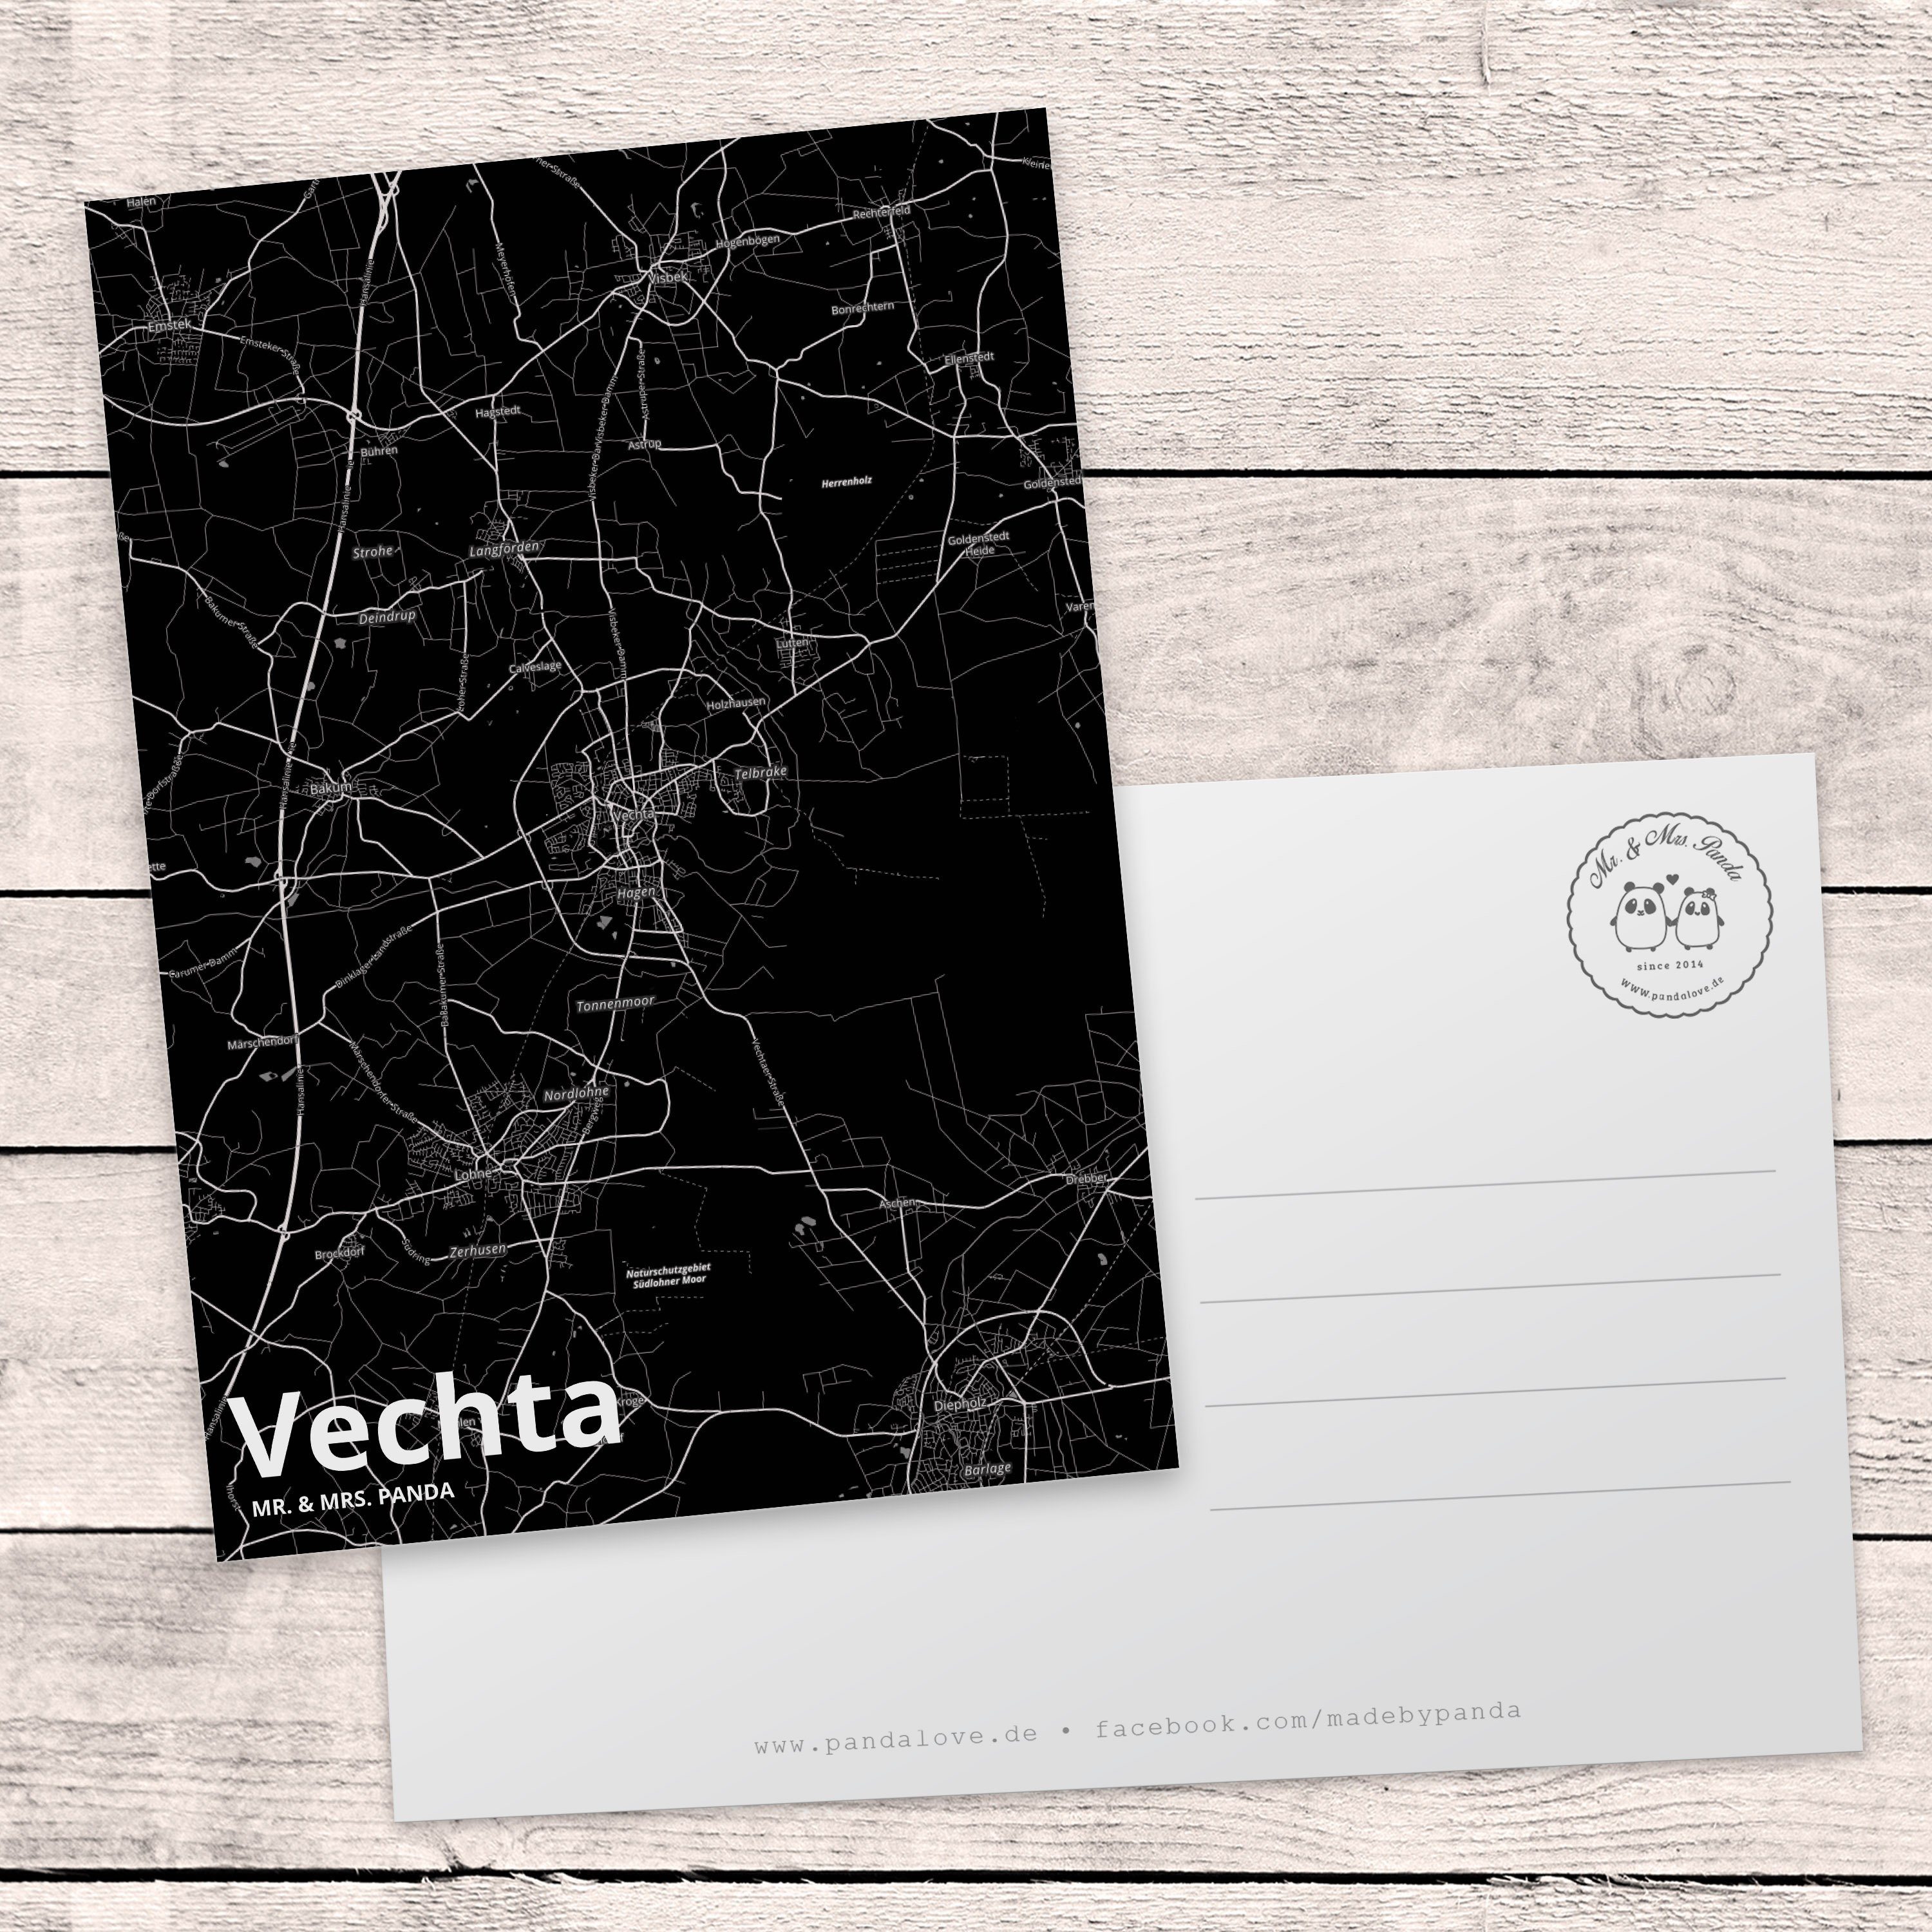 Vechta Mrs. Stadt L - Dorf Karte Ansichtskarte, Postkarte & Mr. Panda Geschenk, Einladungskarte,